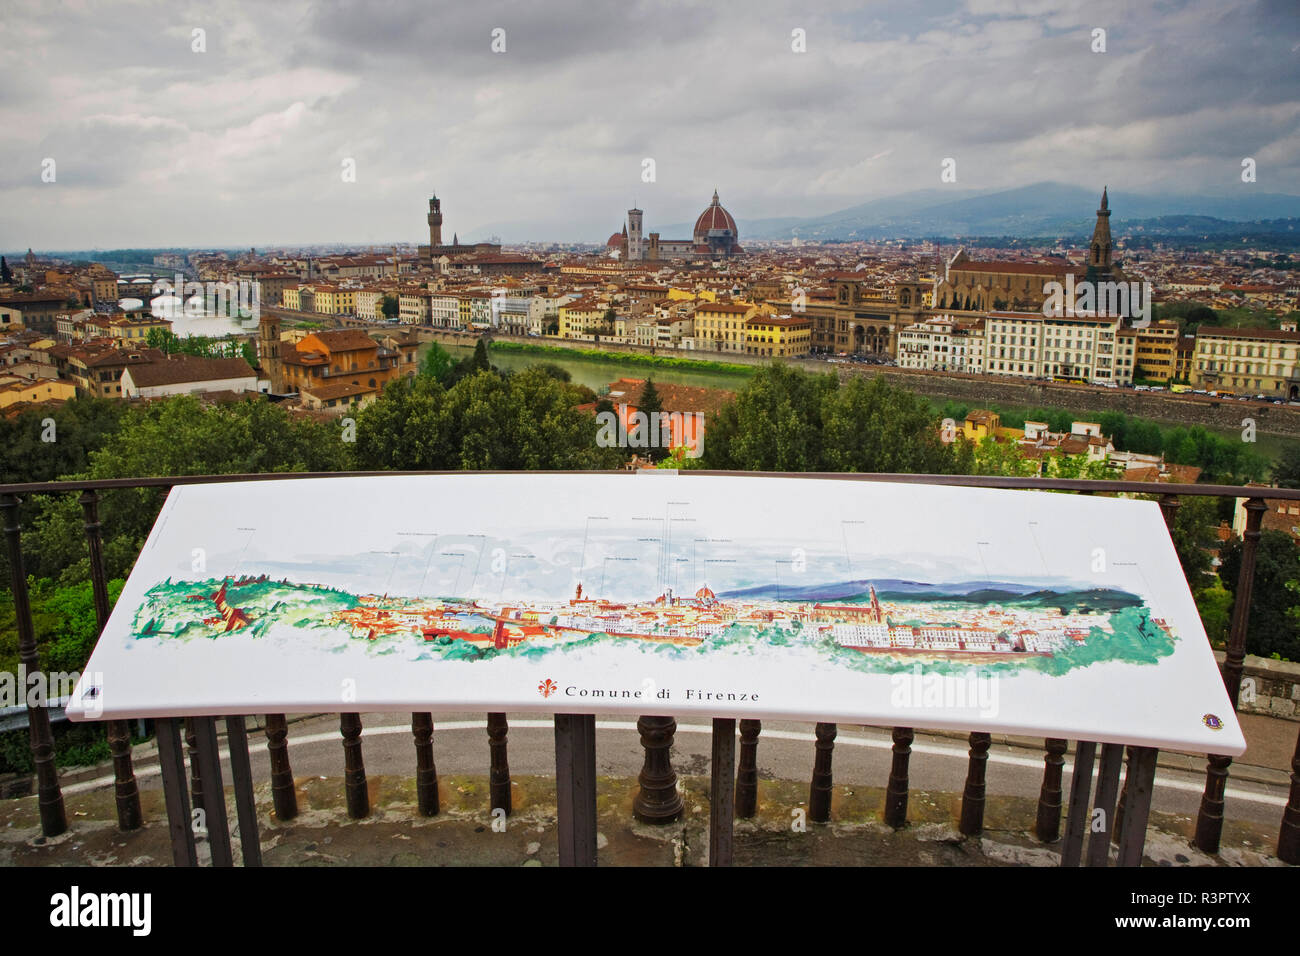 Italien, Florenz. Stadtplan und übersehen. Kredit als: Dennis Flaherty/Jaynes Galerie/DanitaDelimont. com Stockfoto